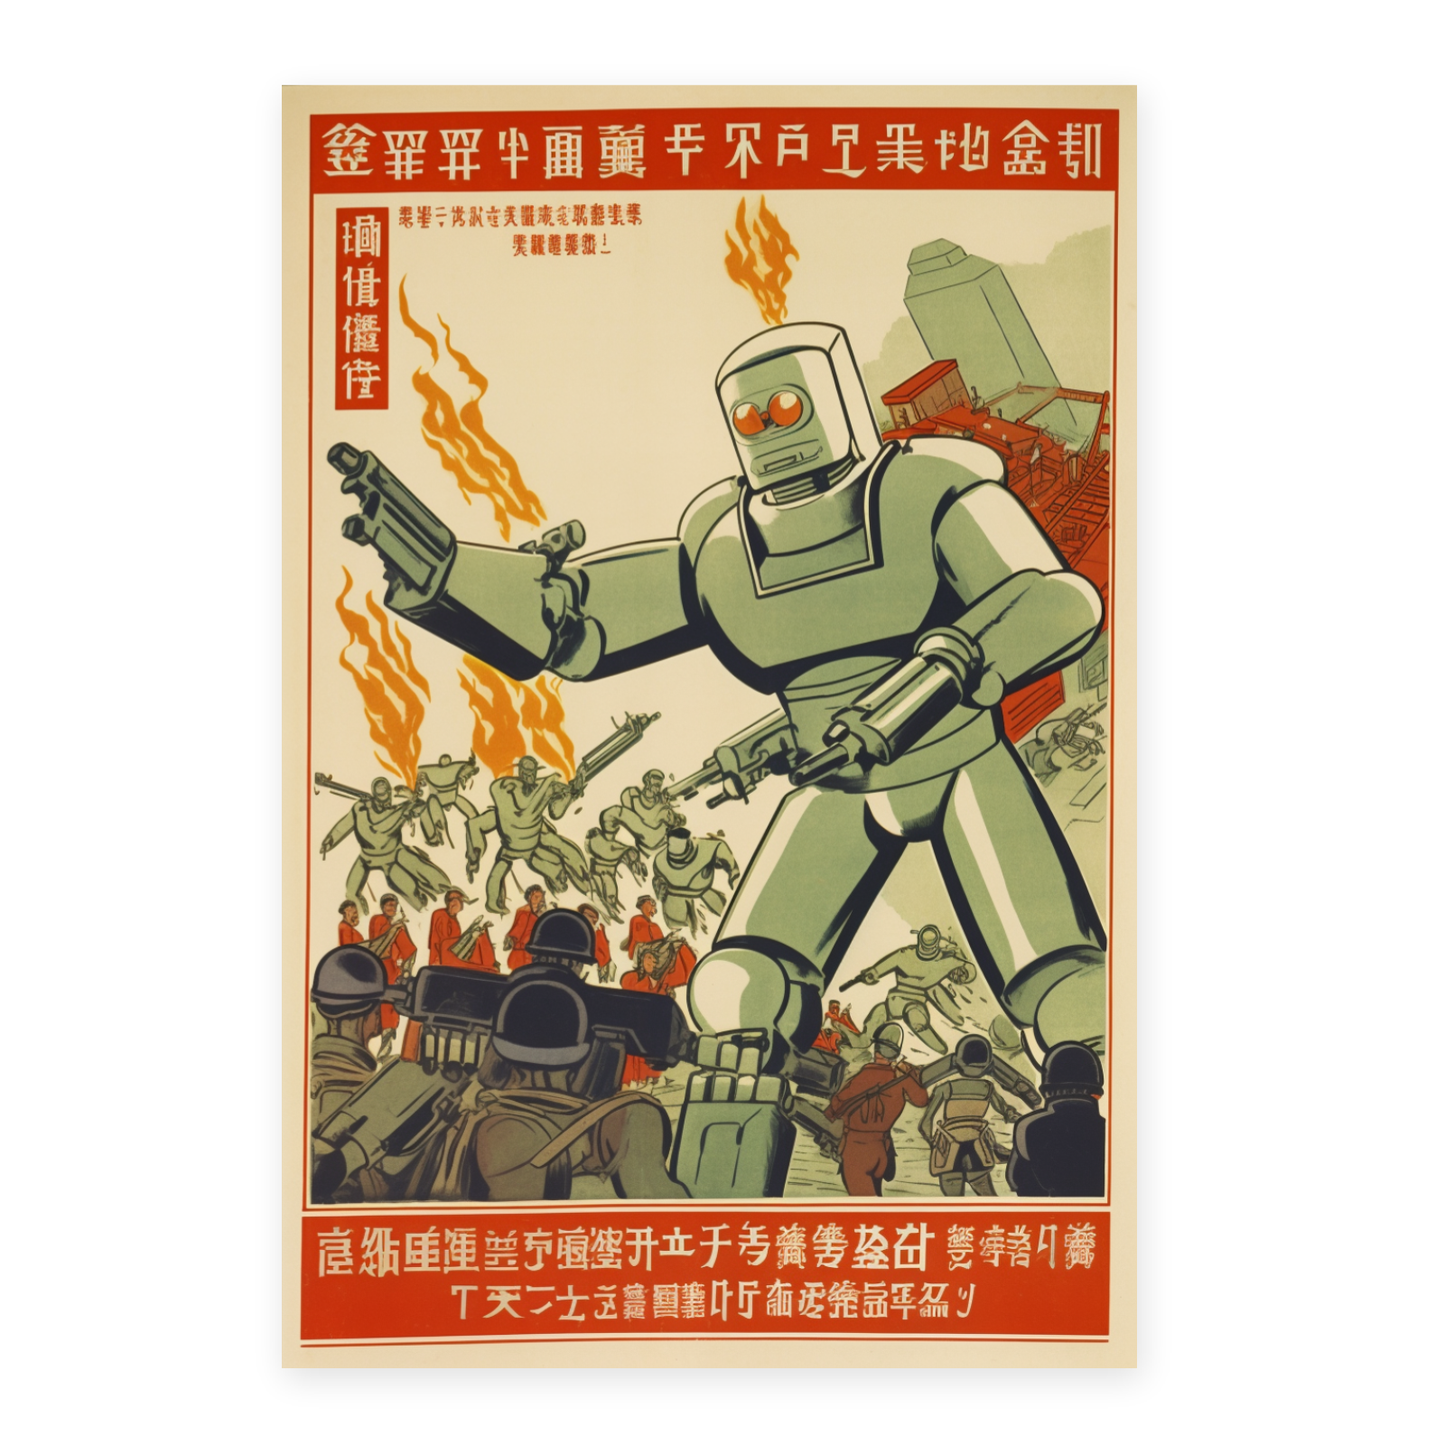 Poster Revolución Cultural China del T